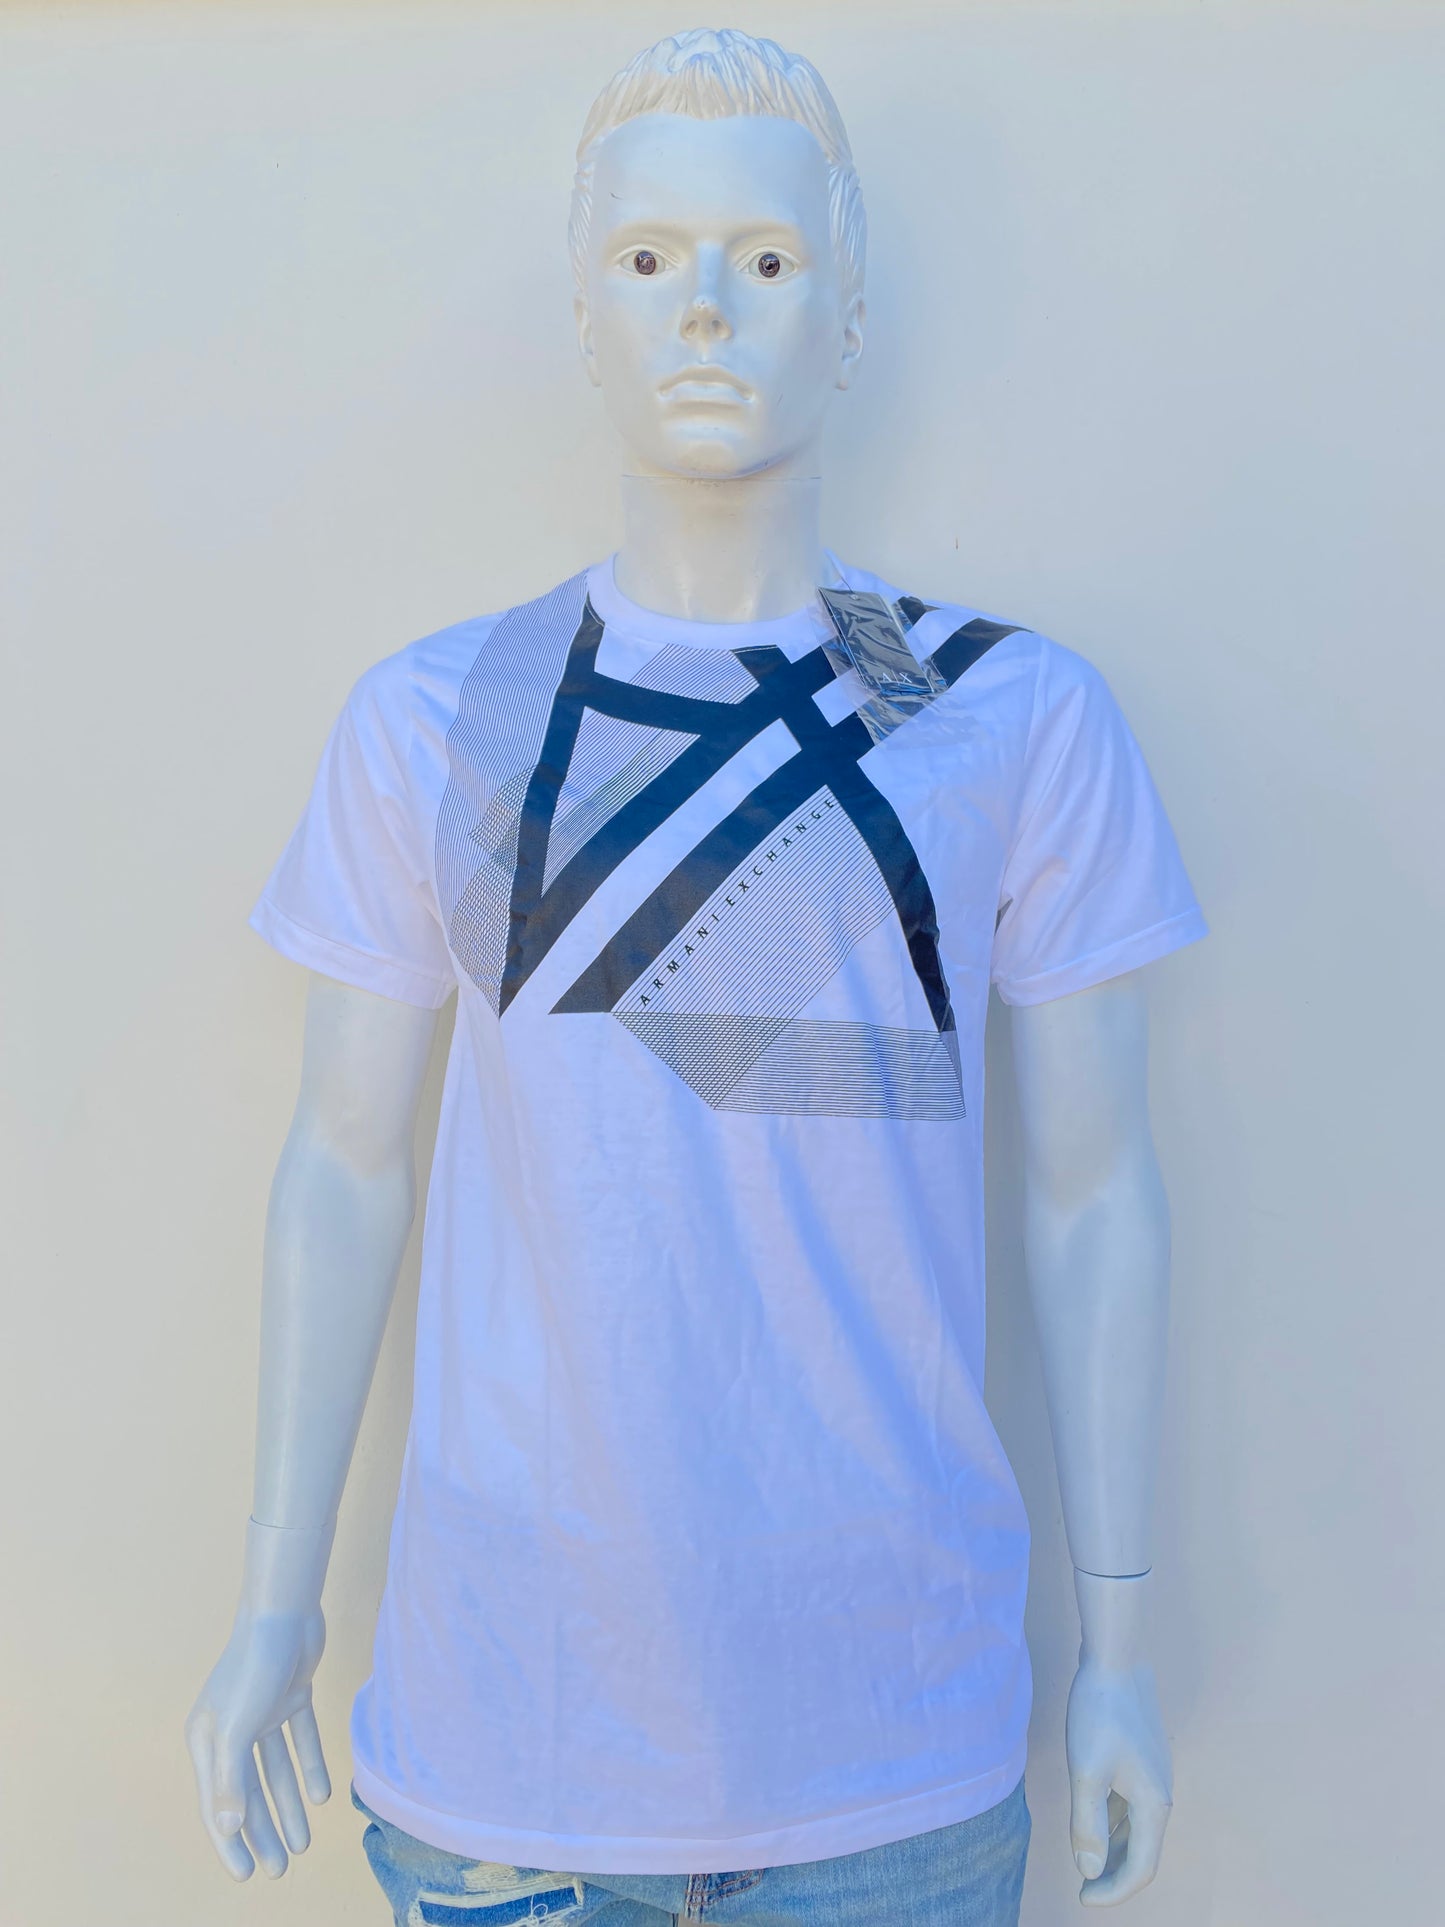 T-shirt Armani Exchange original, blanco con logotipo de la marca AX en negro y rayas negras.